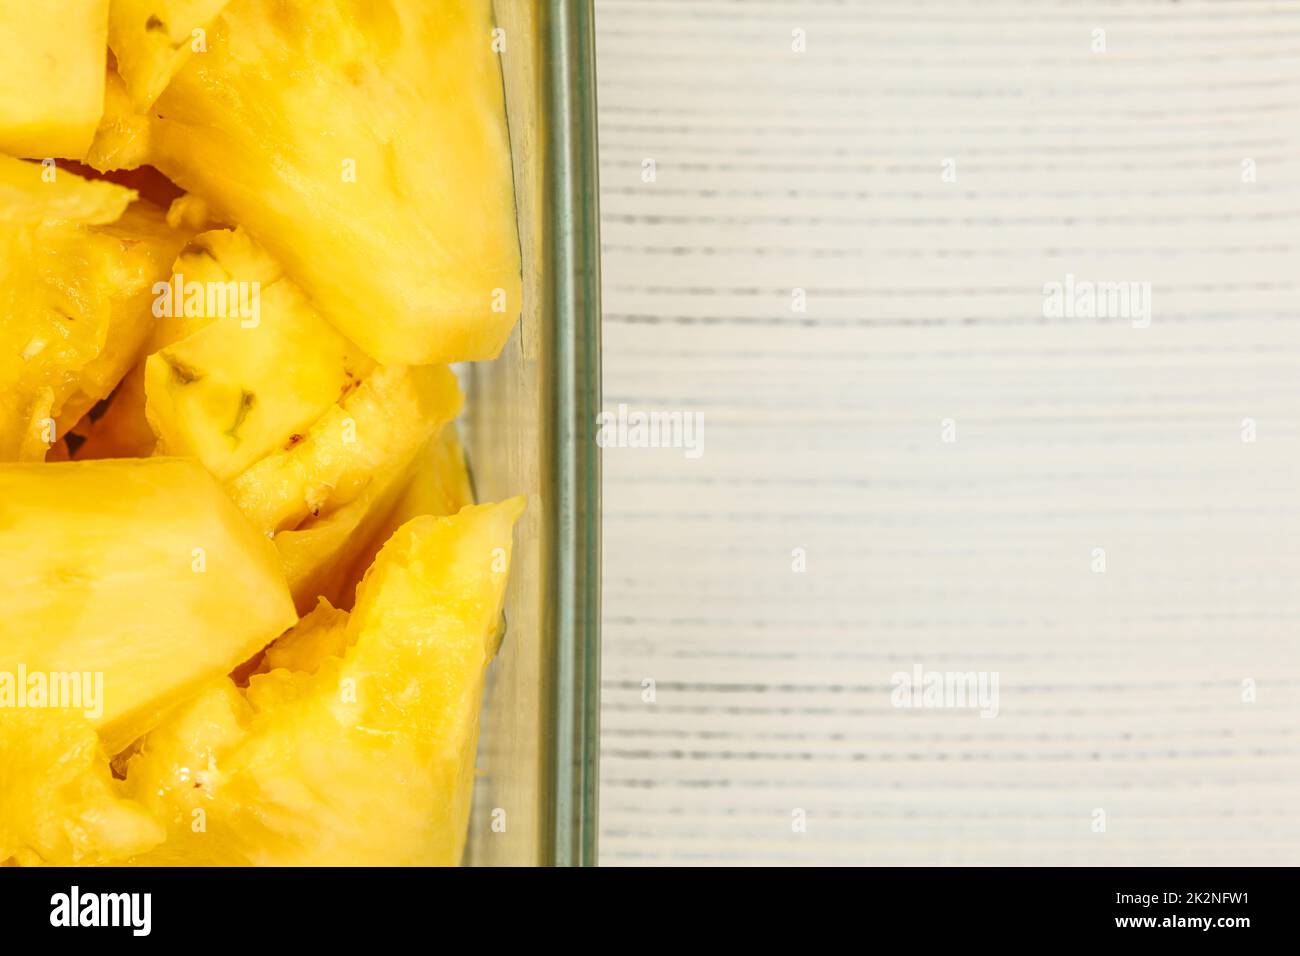 Vue sur table, détail - jaune ananas, en morceaux, dans un bol en verre carré, tableaux blancs 24 / espace pour le texte sur la droite. Banque D'Images